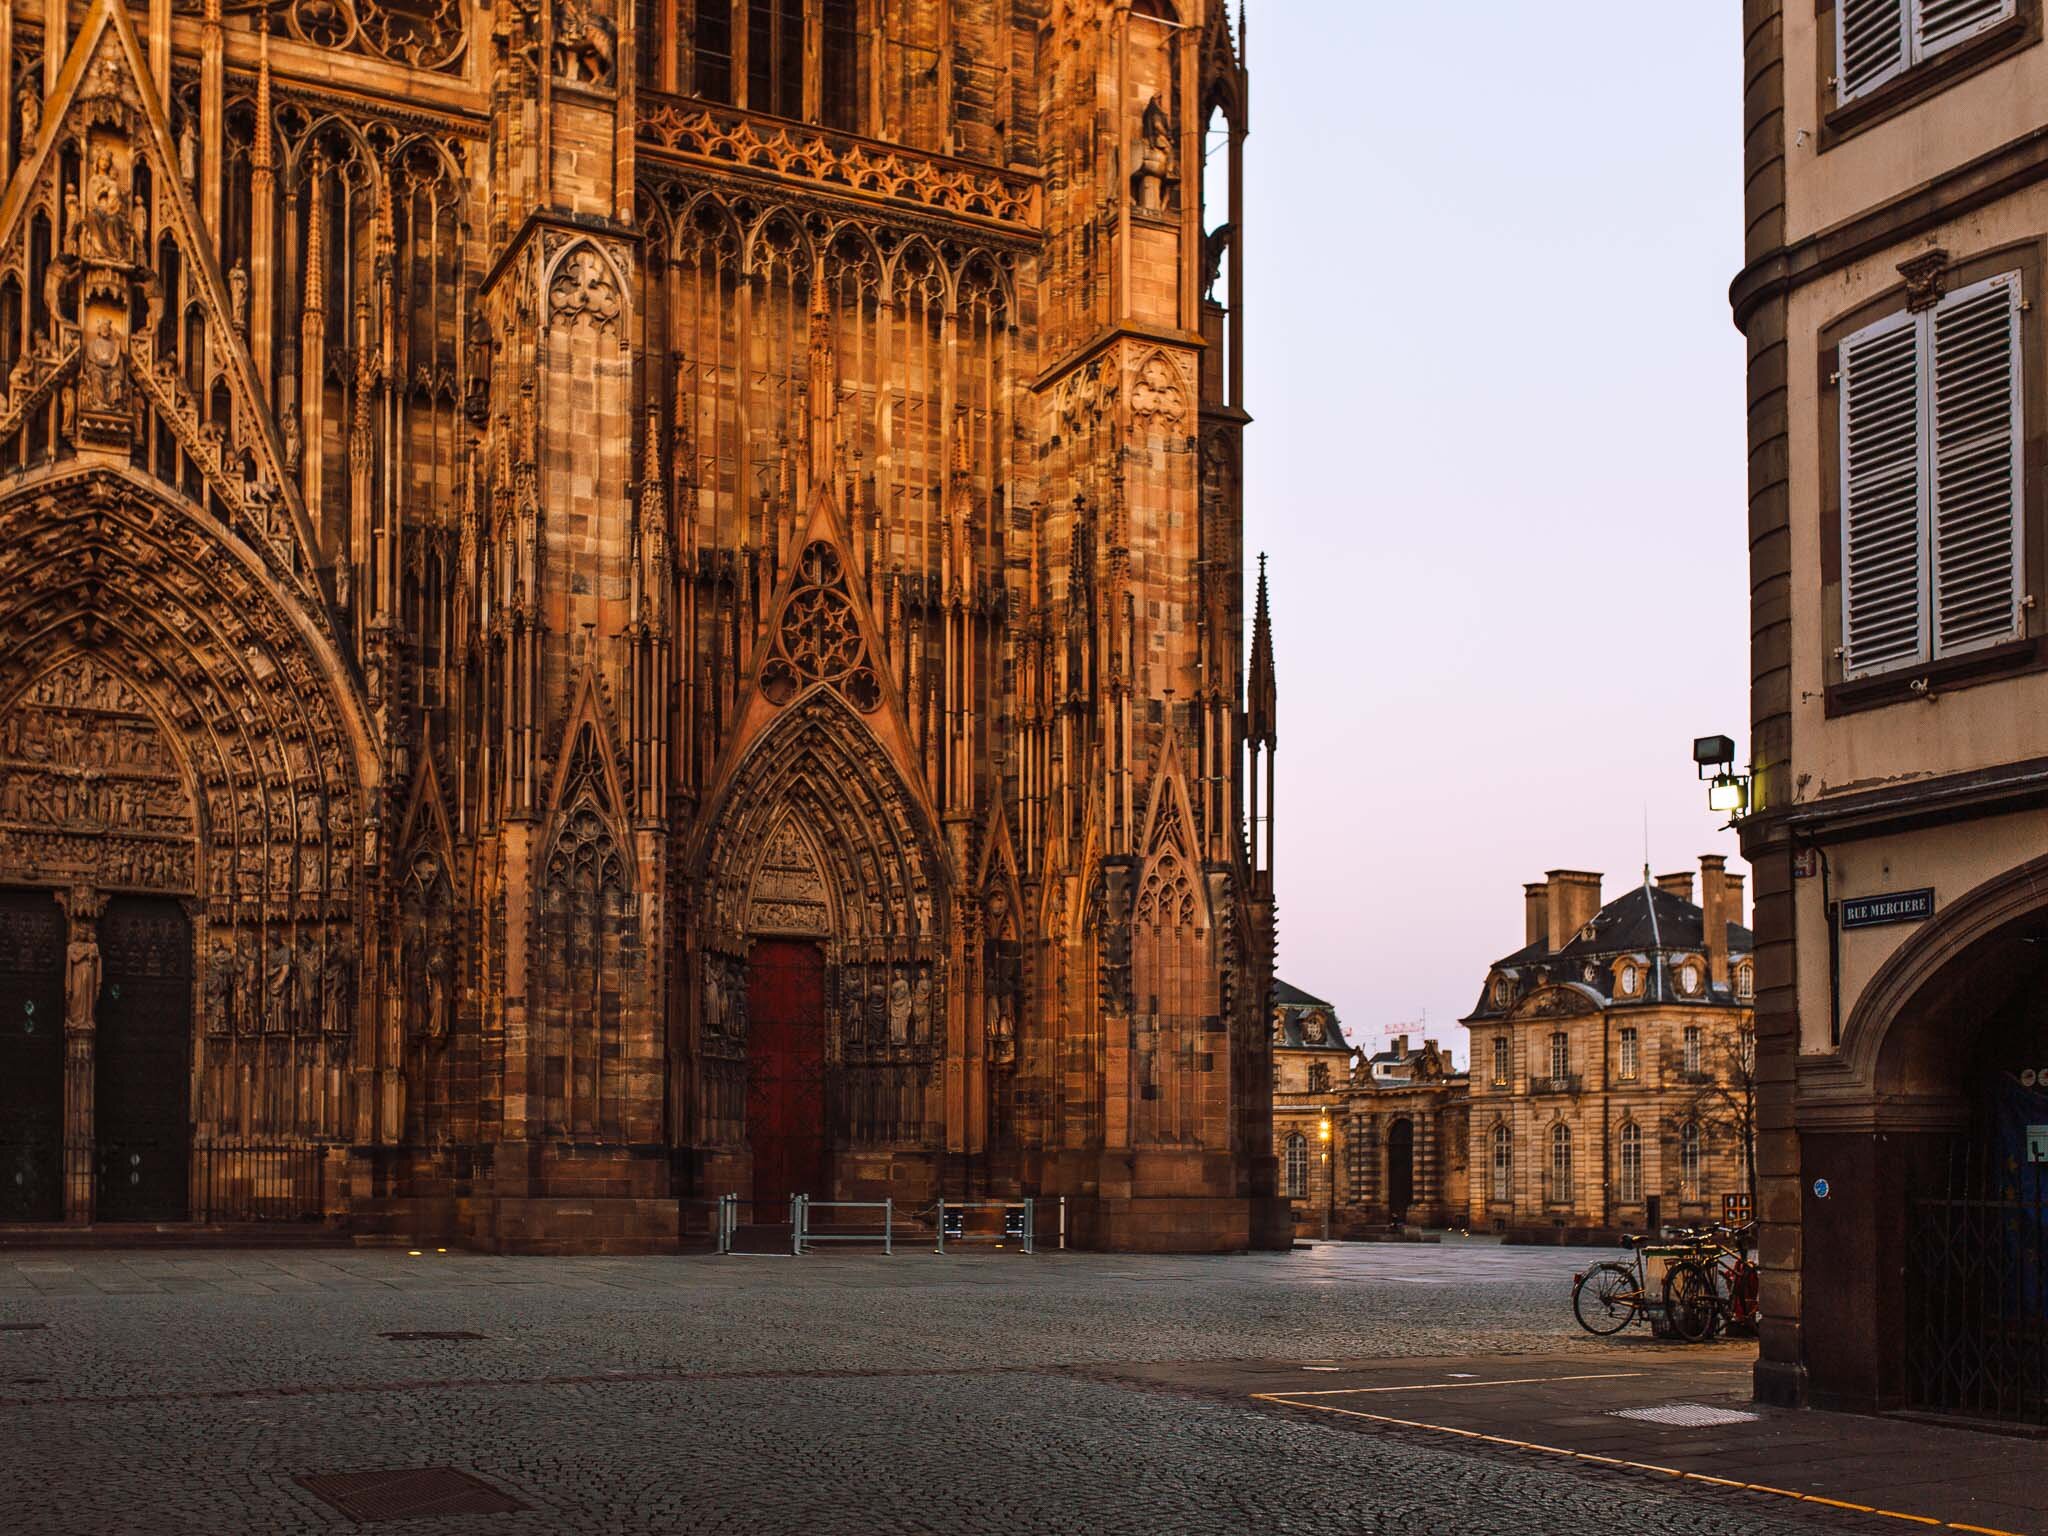  Place de la Cathédrale à Strasbourg, habituellement très vivante et très touristique.  